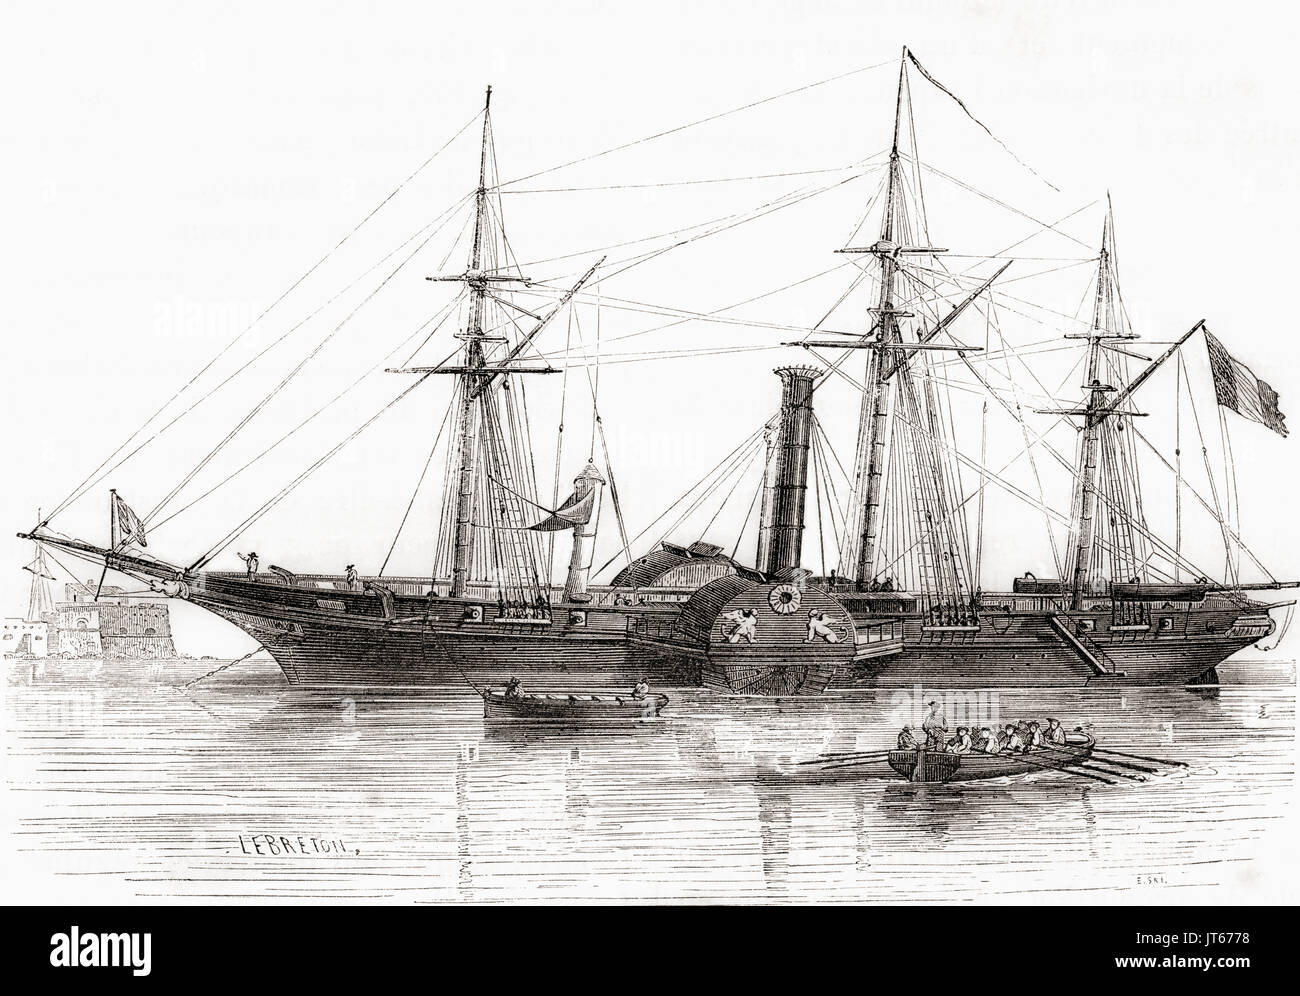 La corvette française Le Sphinx. Construite en 1829 elle a été le premier bateau à vapeur de la marine française. De : Les merveilles de la science, publié en 1870. Banque D'Images